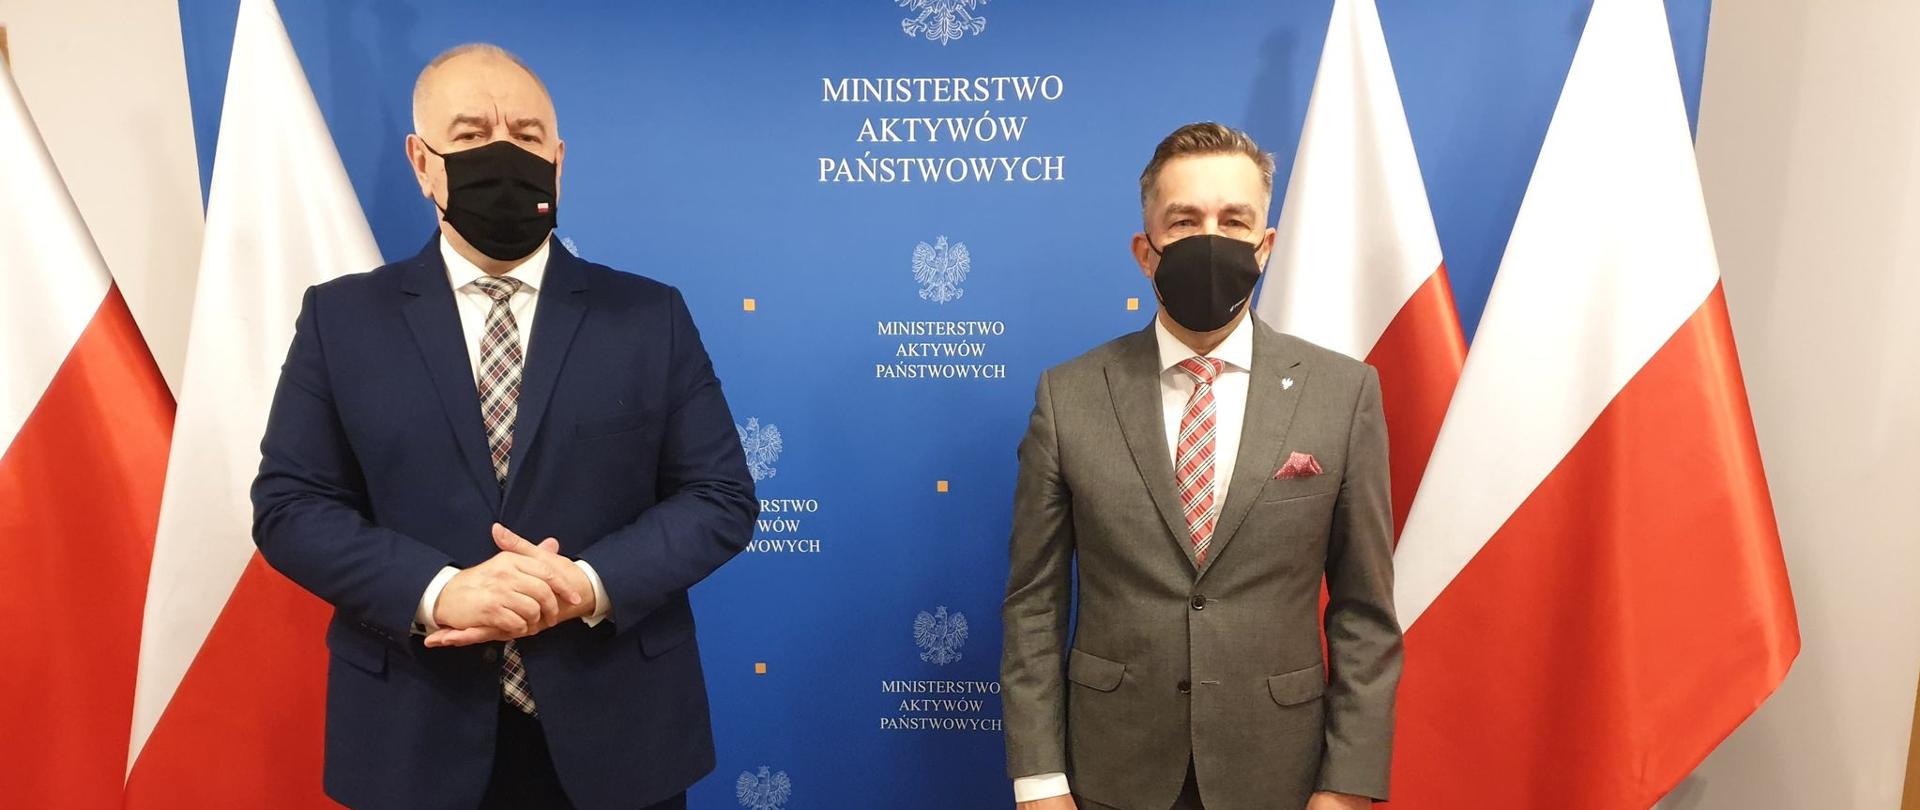 Wicepremier Jacek Sasin oraz wiceminister Zbigniew Gryglas na tle ścianki. Po obu stronach flagi Polski. 